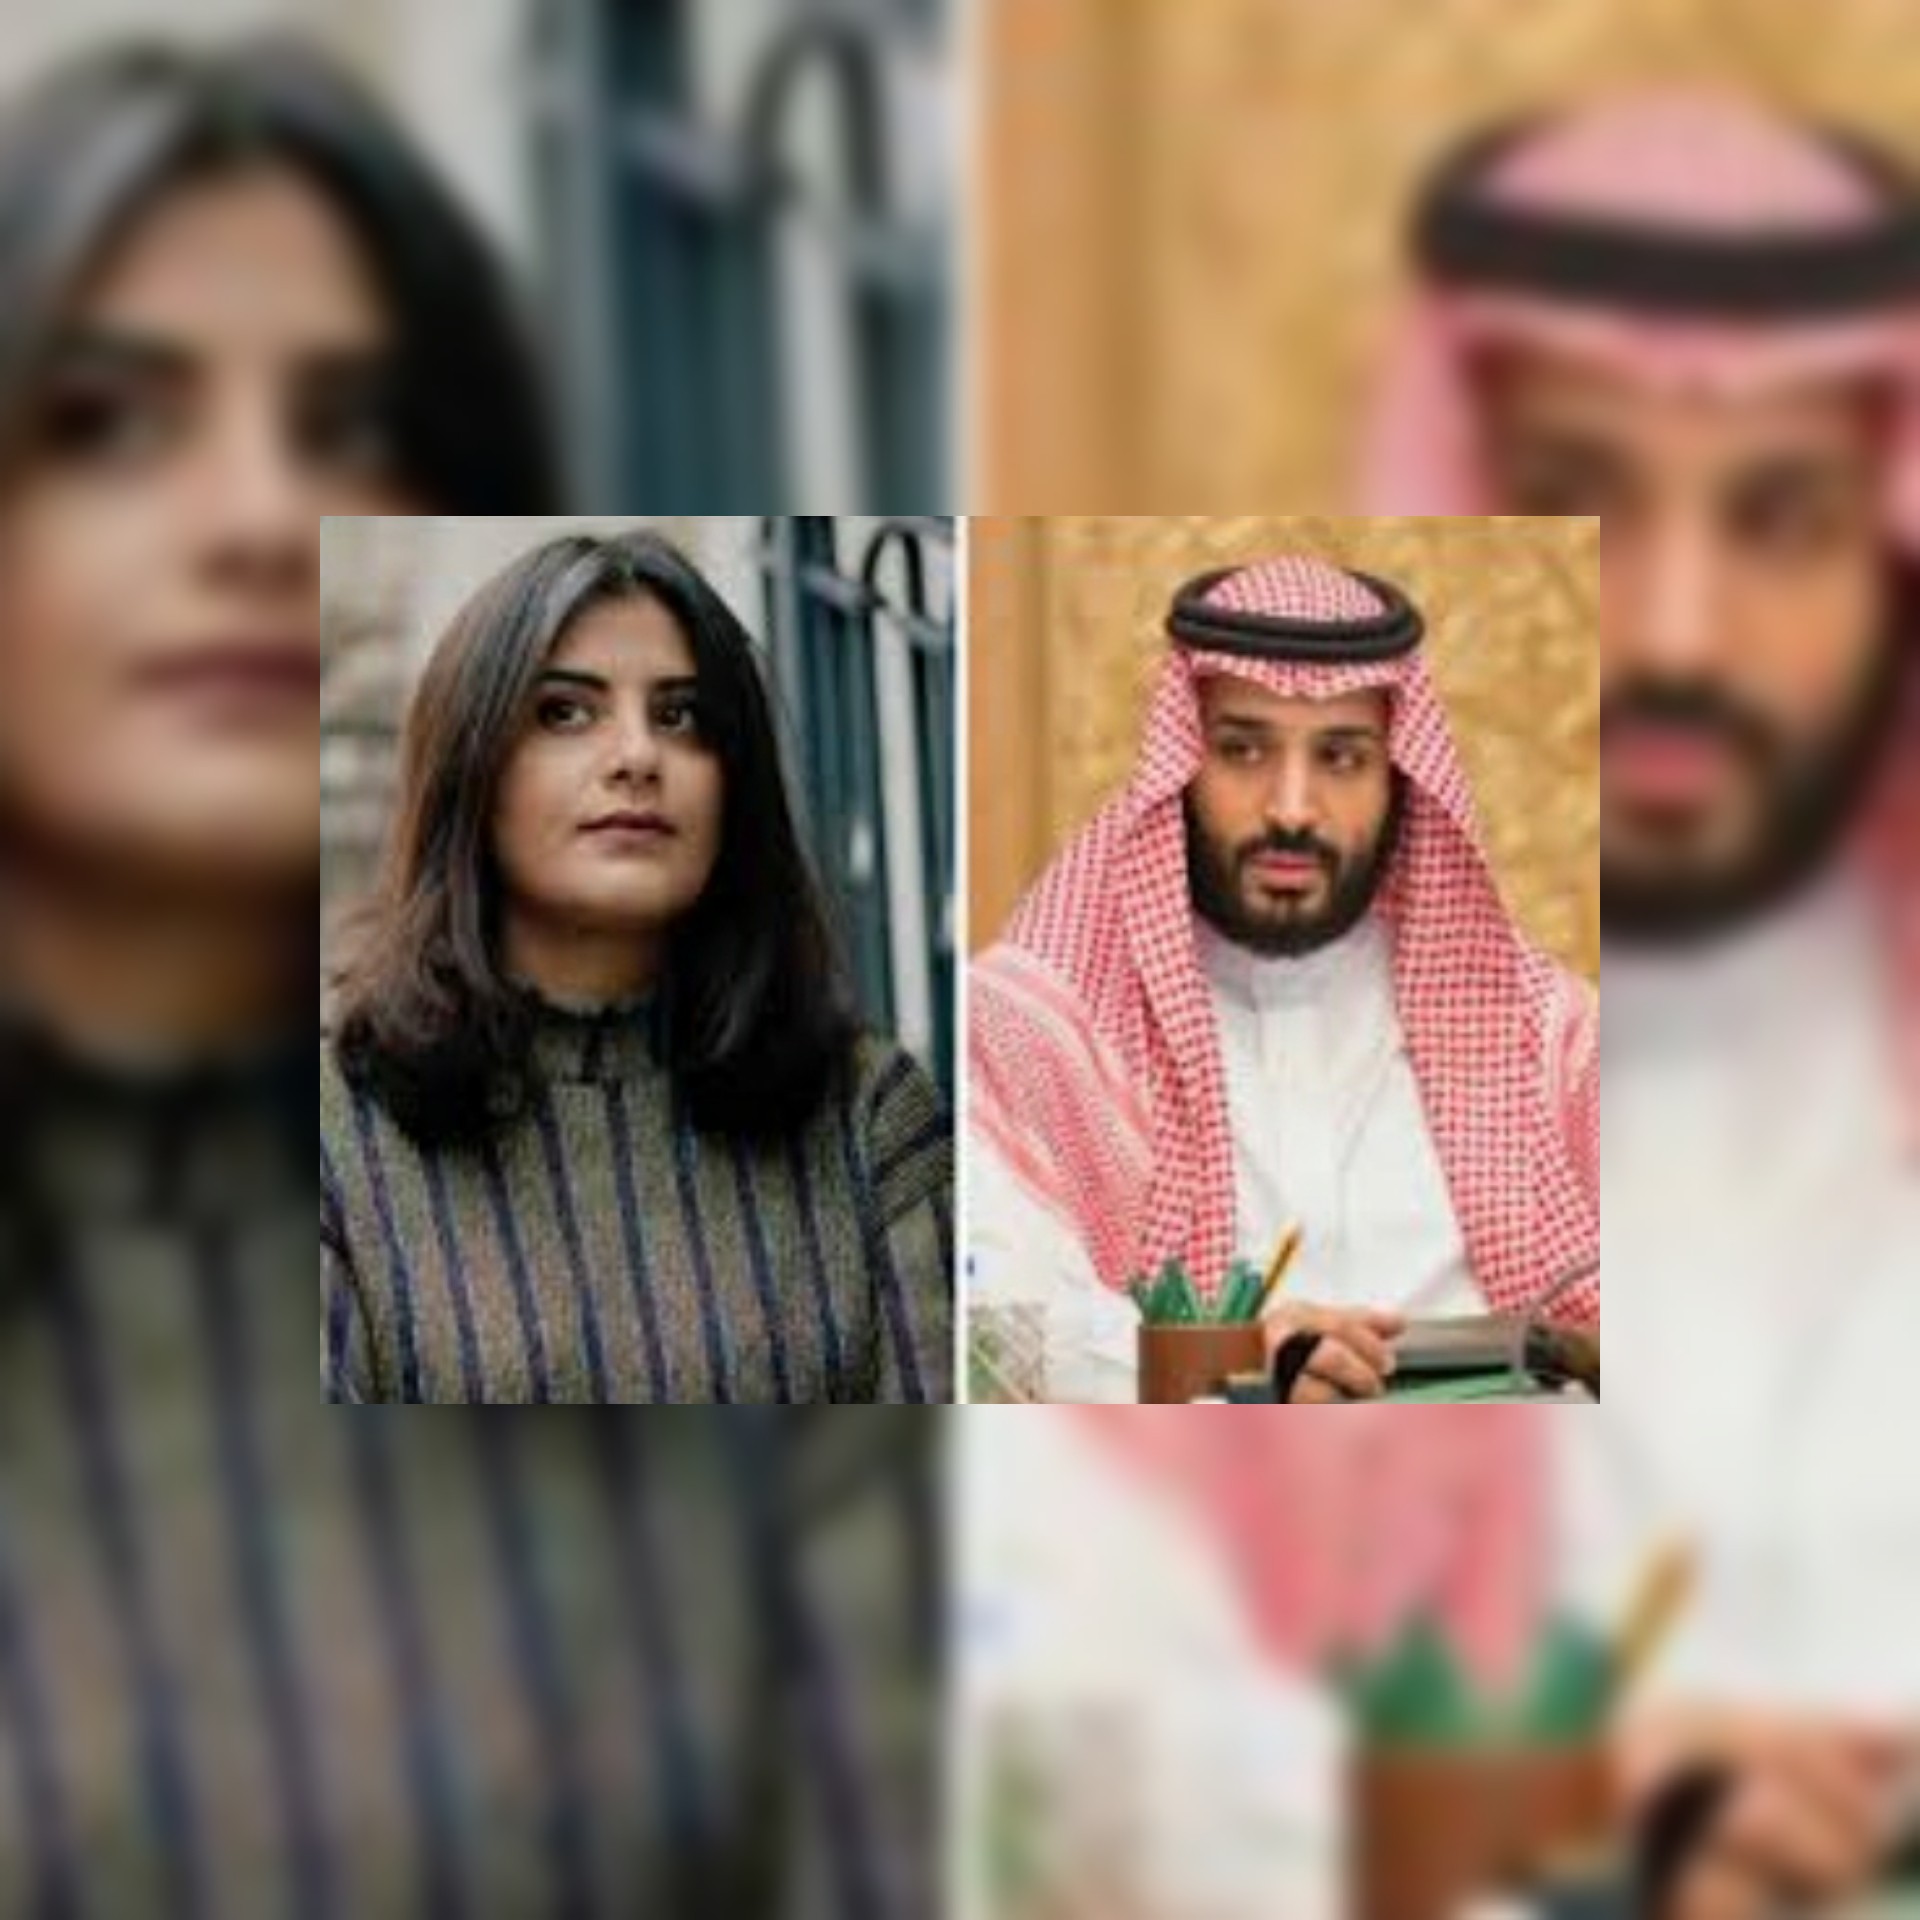 السعودية تتهم الناشطة المحتجزة لجين الهذلول بـ